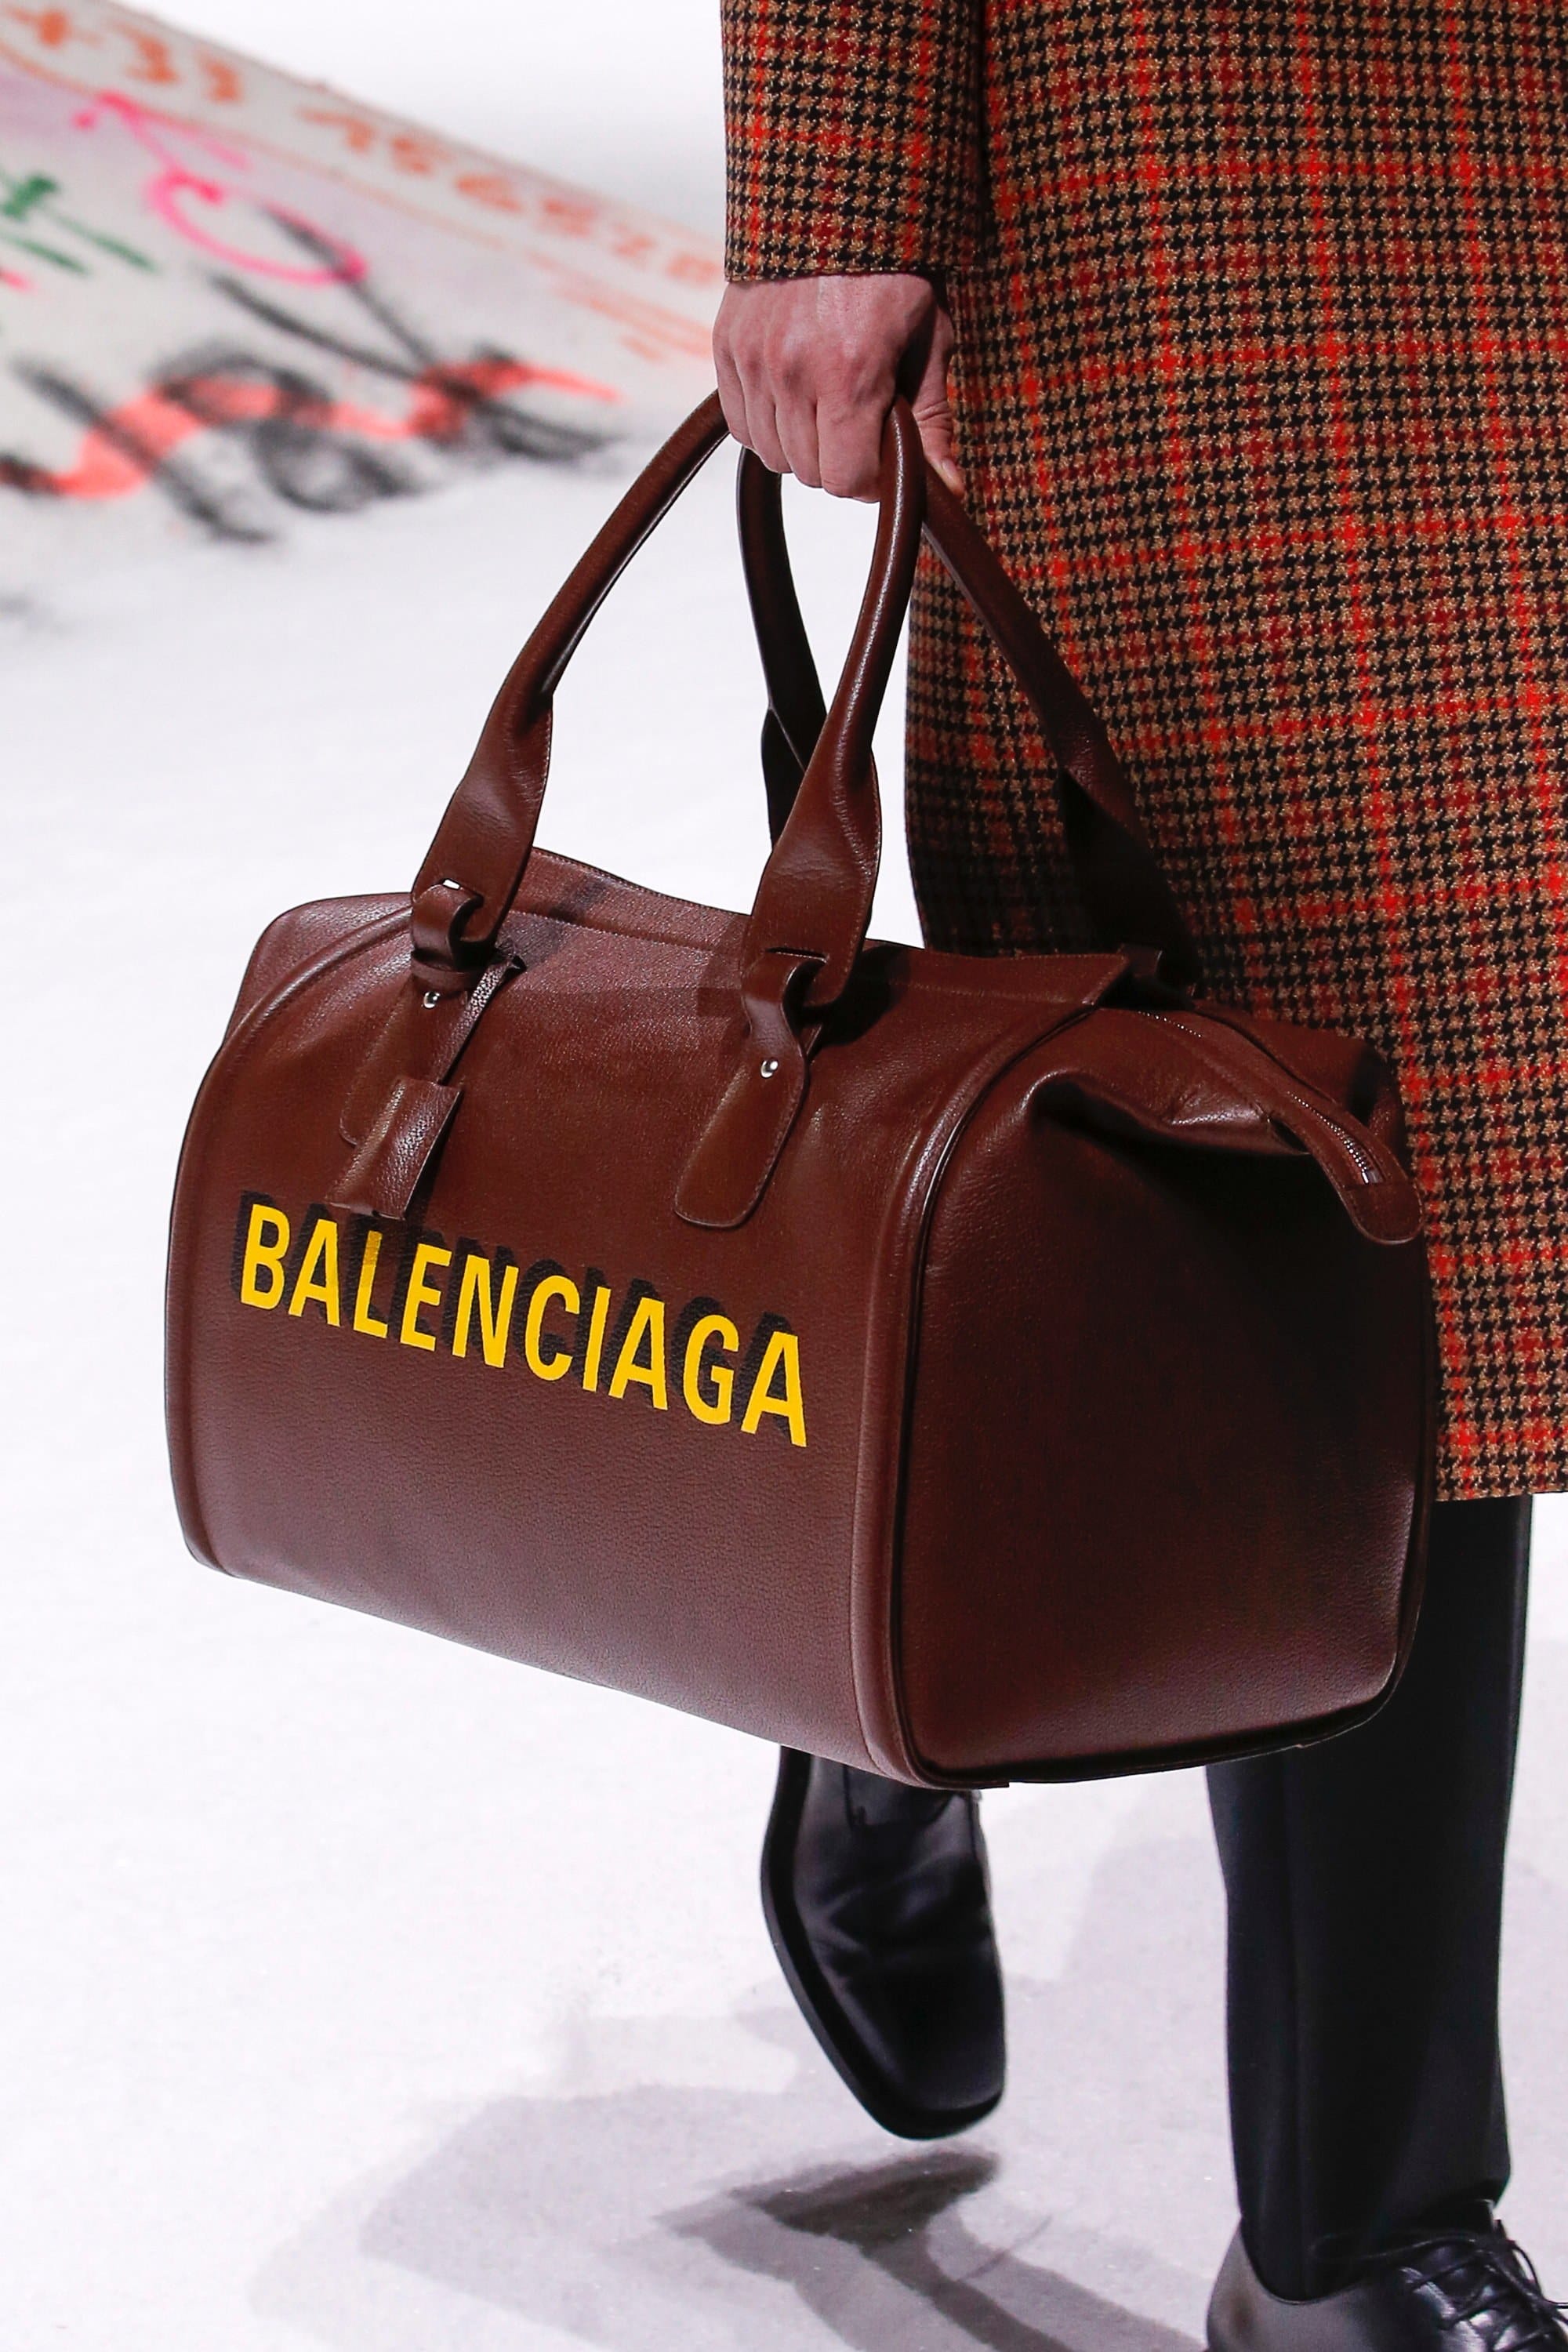 Balenciaga Bag - BAG REVIEW: Balenciaga Giant 12 Gold Velo in Black ...